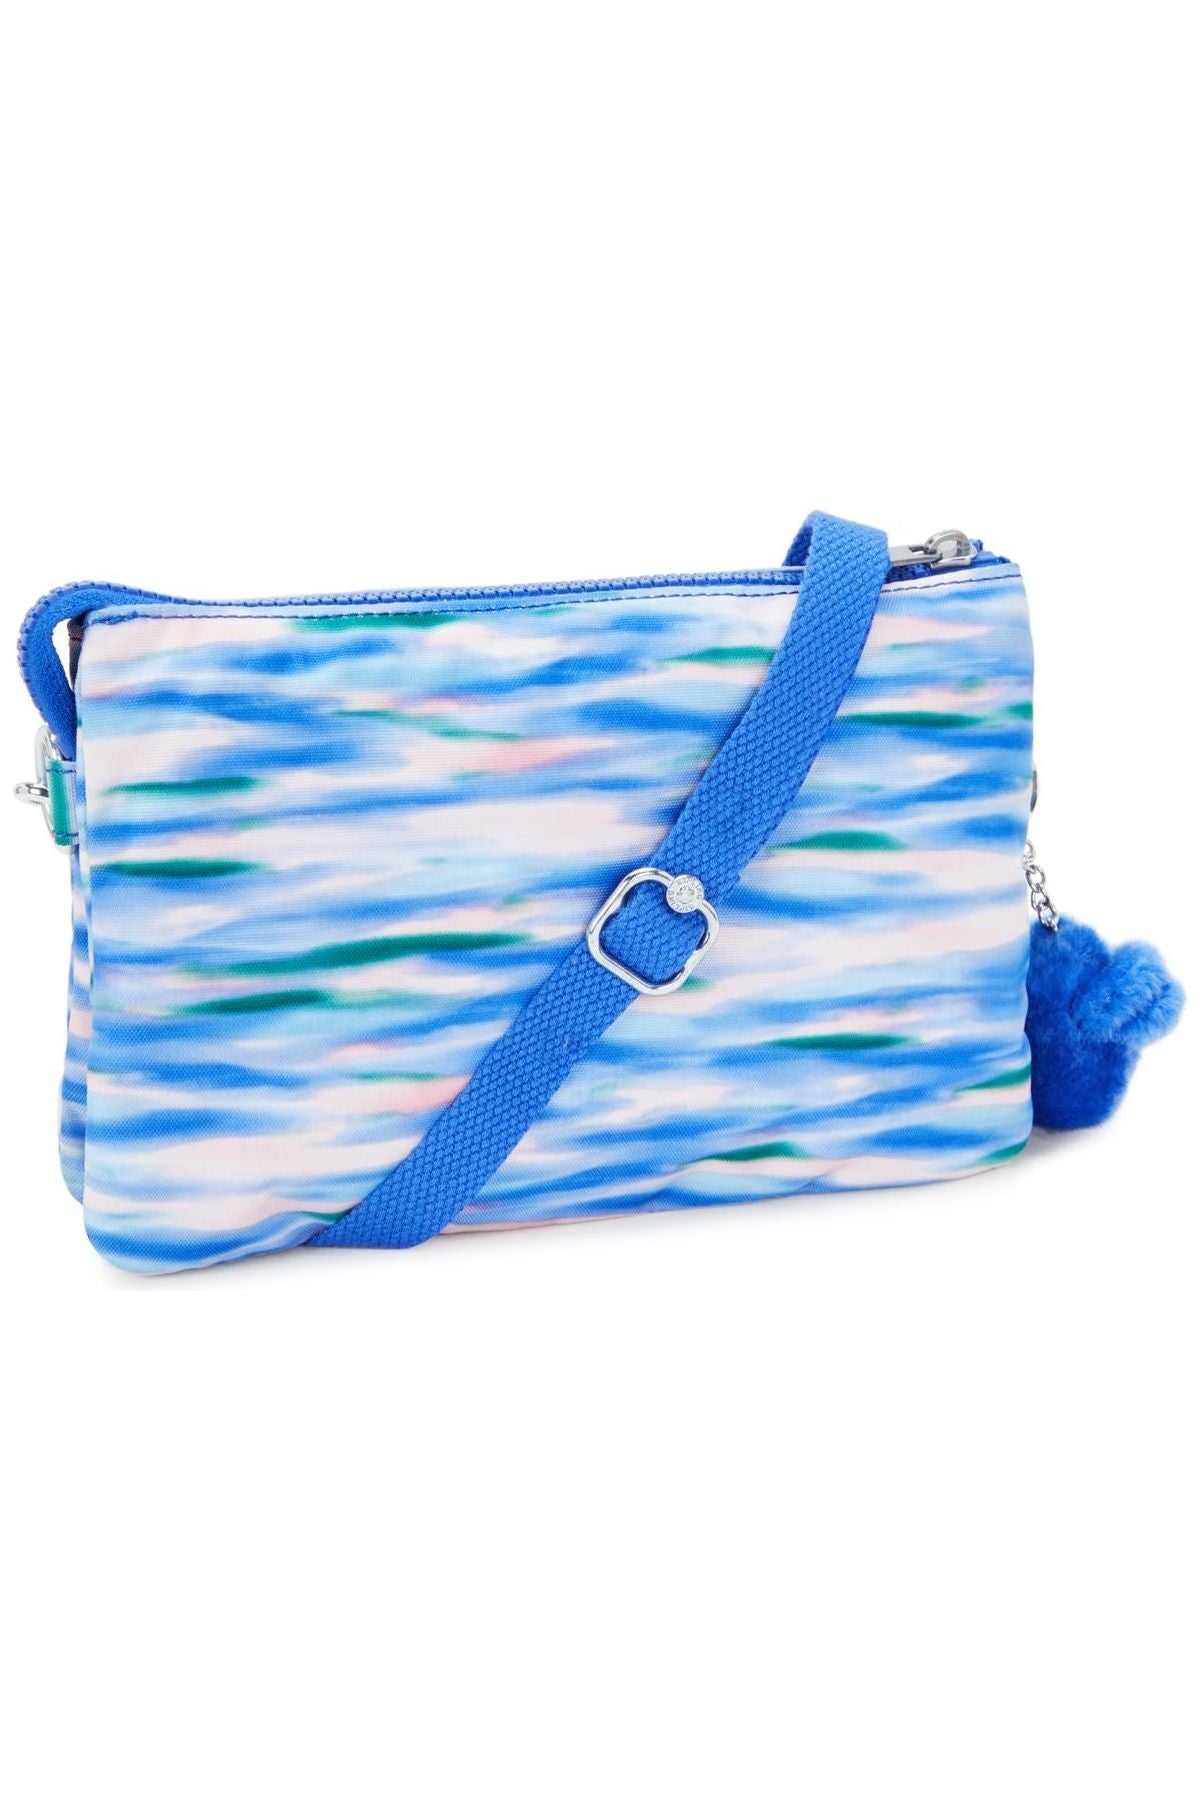 Kipling Riri  Handbag in diluted blue